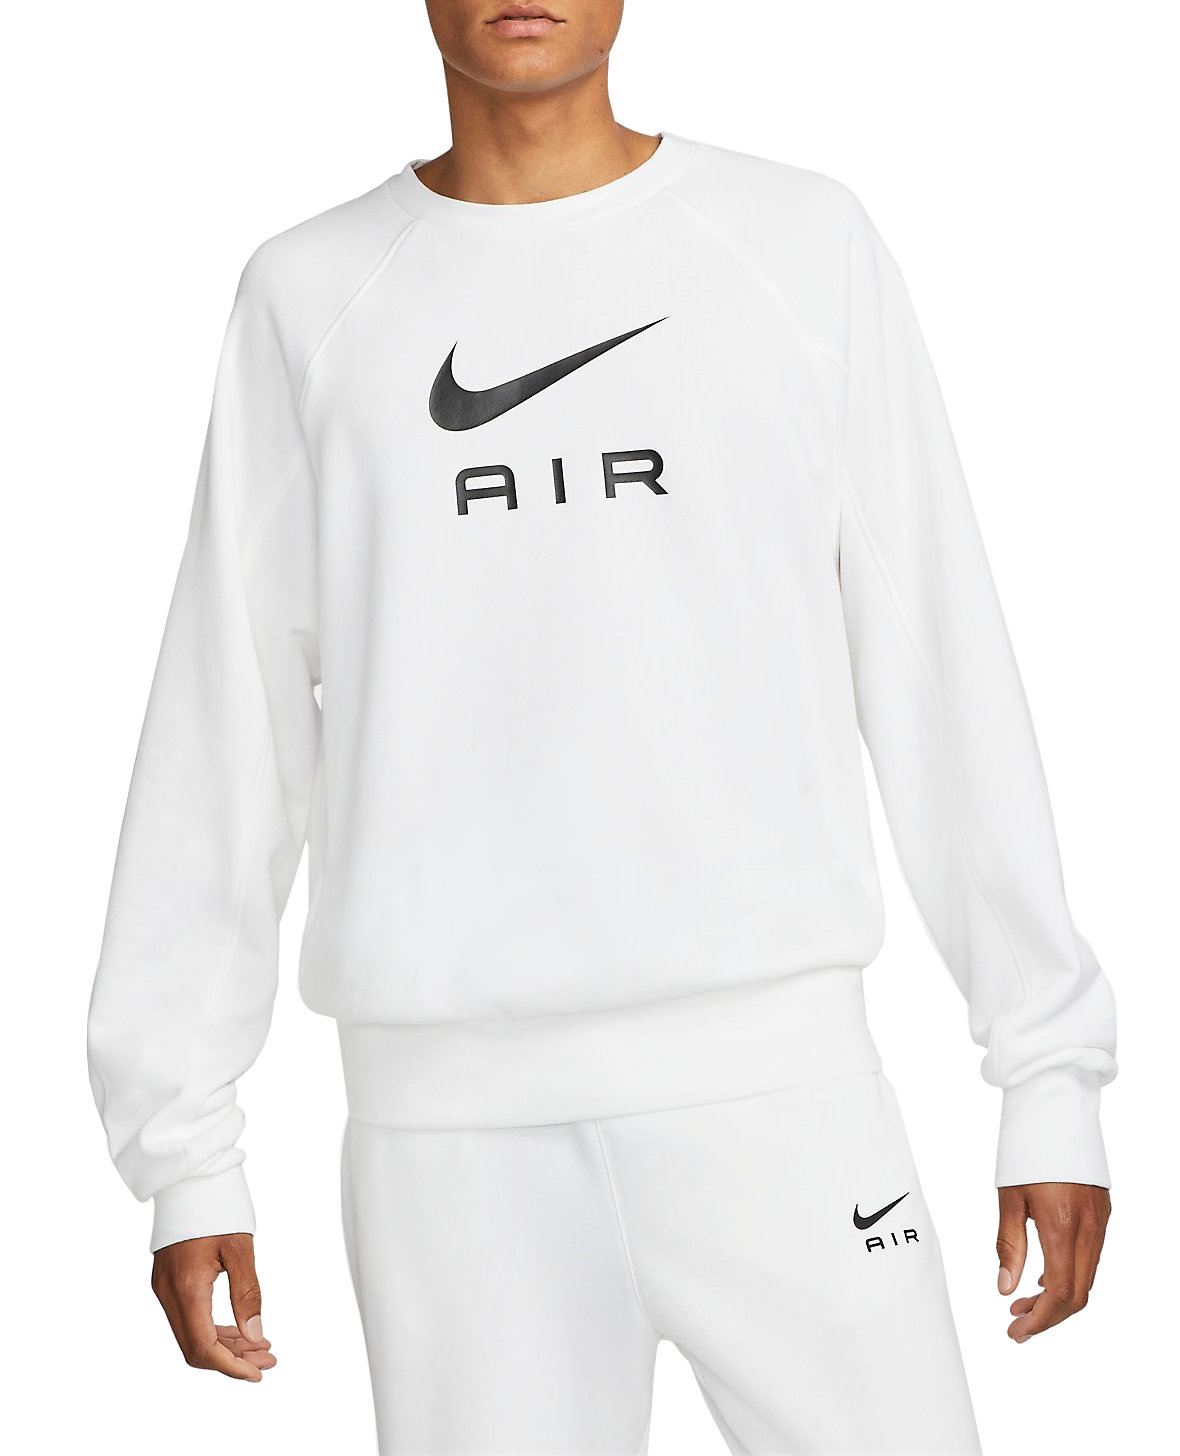 Nike Air FT Crew Sweatshirt - 11teamsports.es